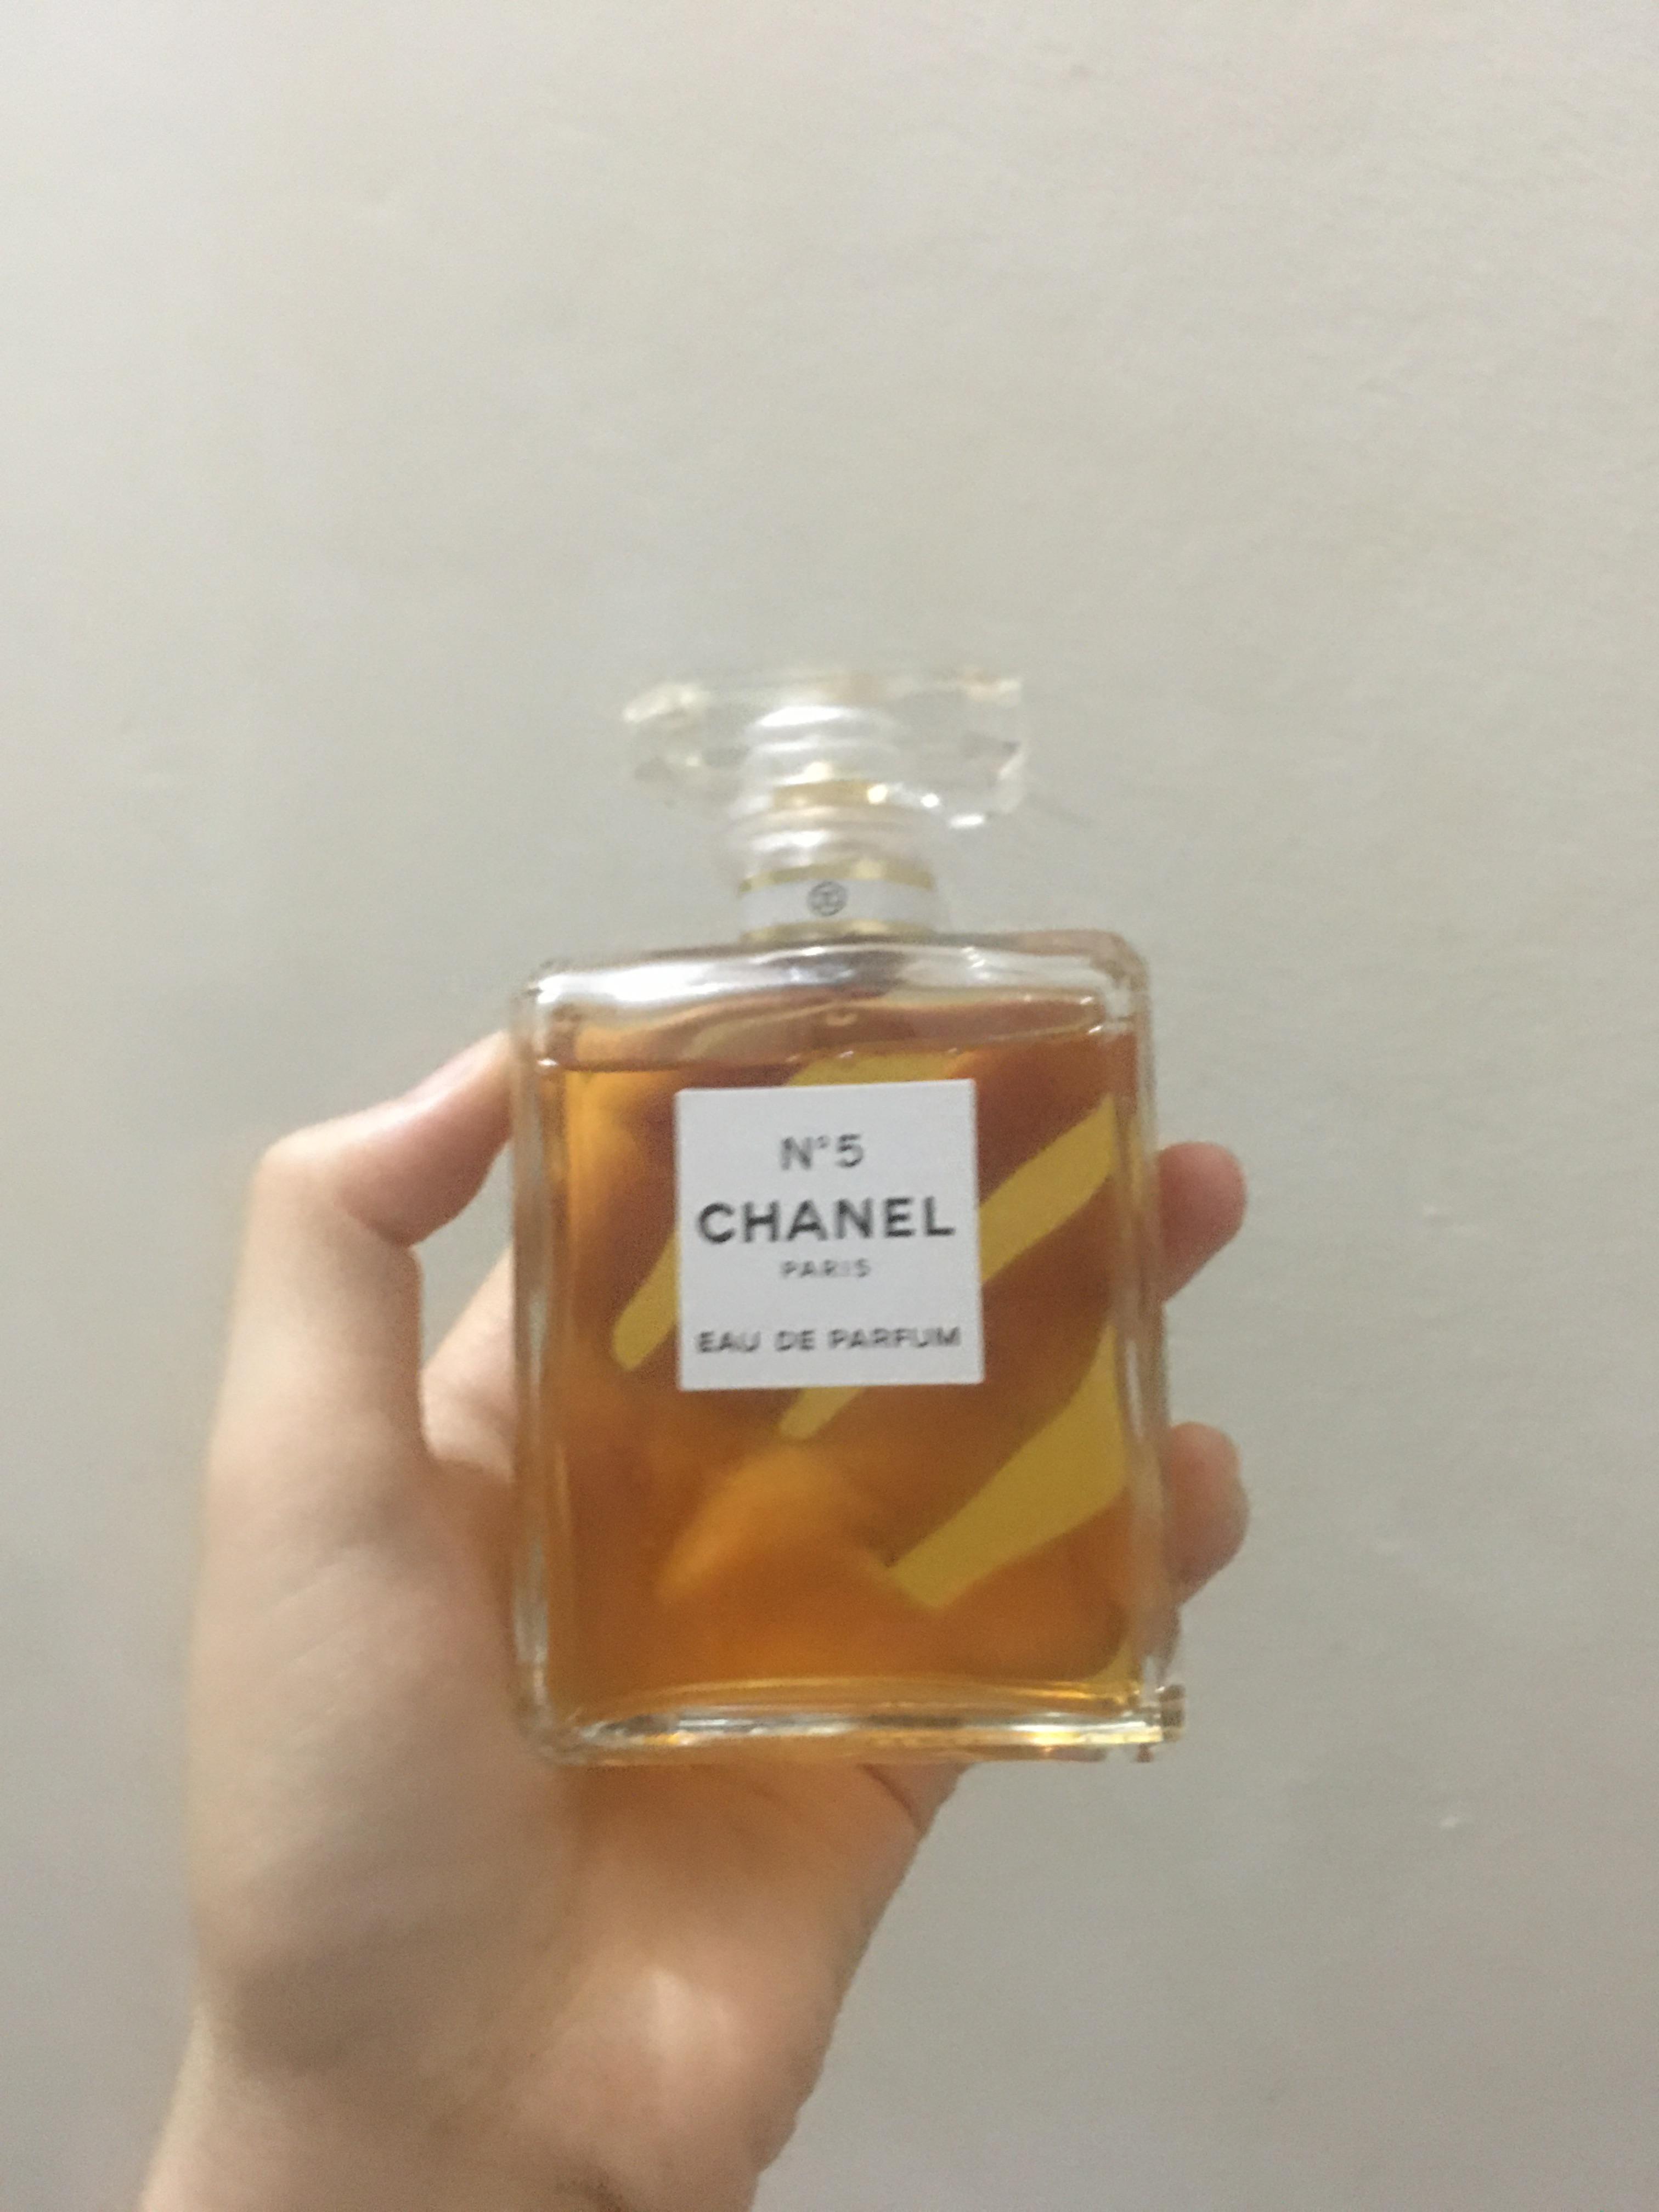 Nước hoa chanel no5 eau de parfum by Chanel vietnam  review  Nữ  Tryandreviewcom